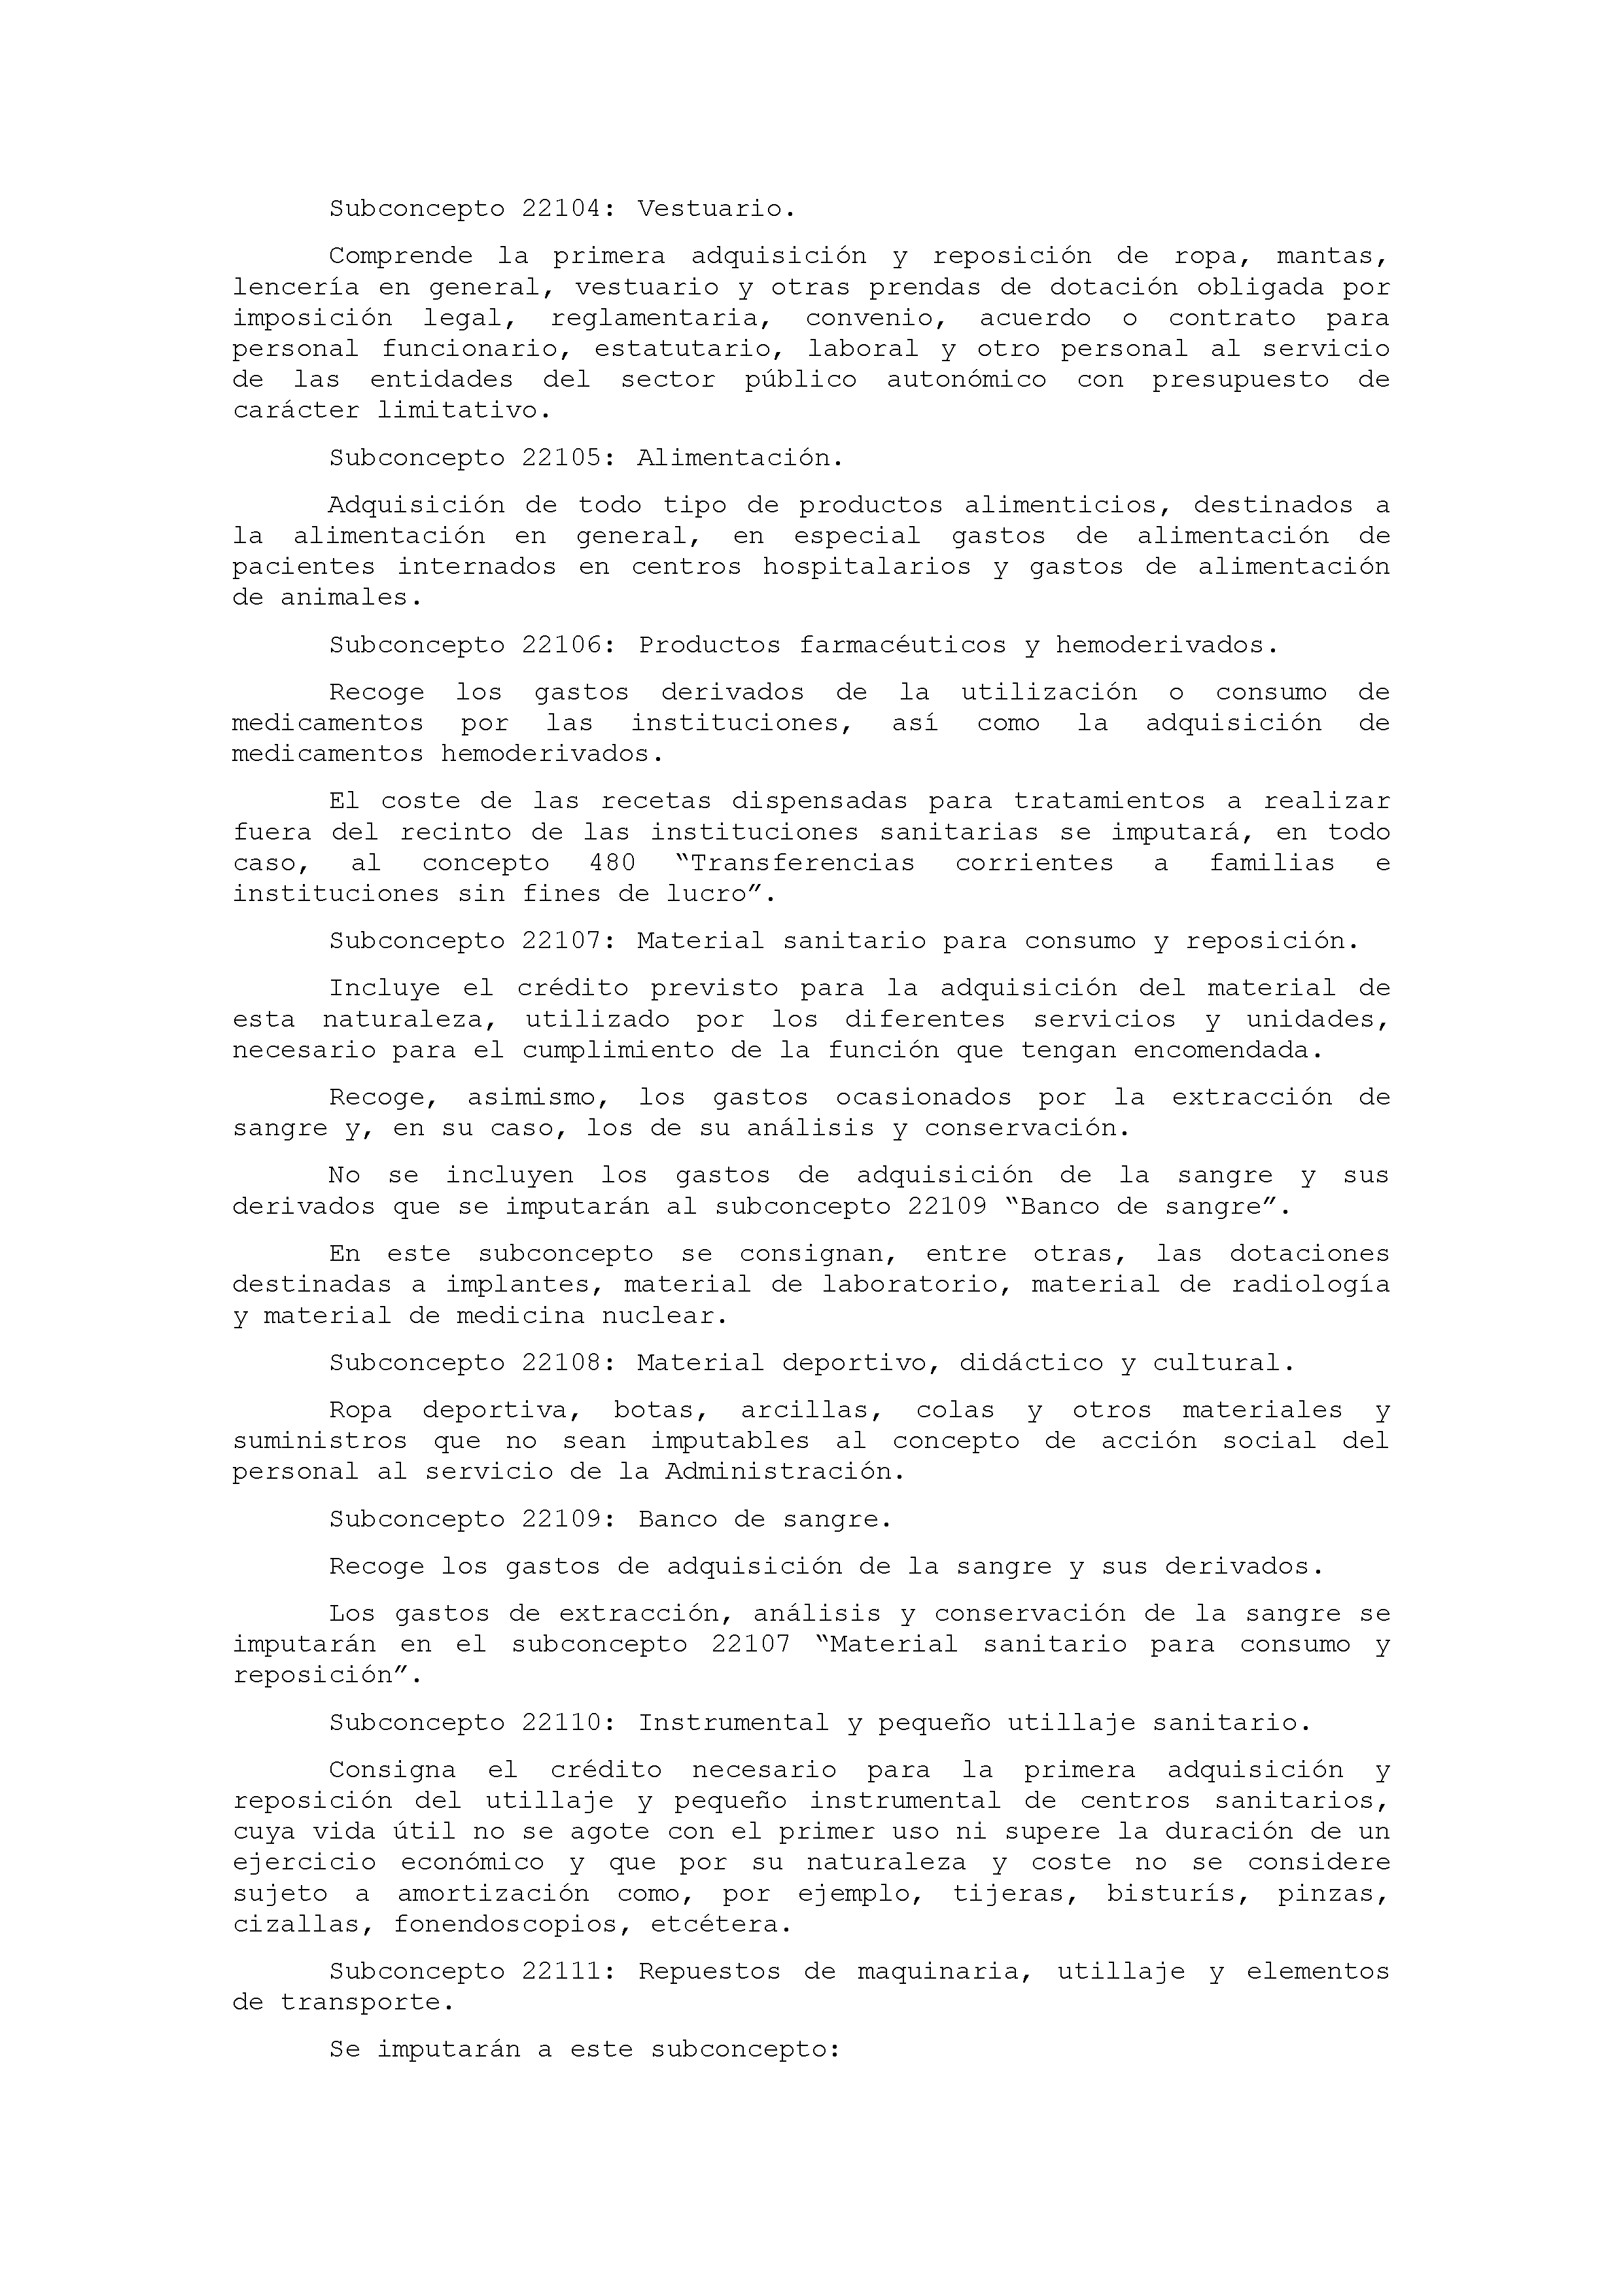 ANEXO IX CÓDIGO DE LA CLASIFICACIÓN ECONÓMICA DE LOS GASTOS PÚBLICOS Pag 18